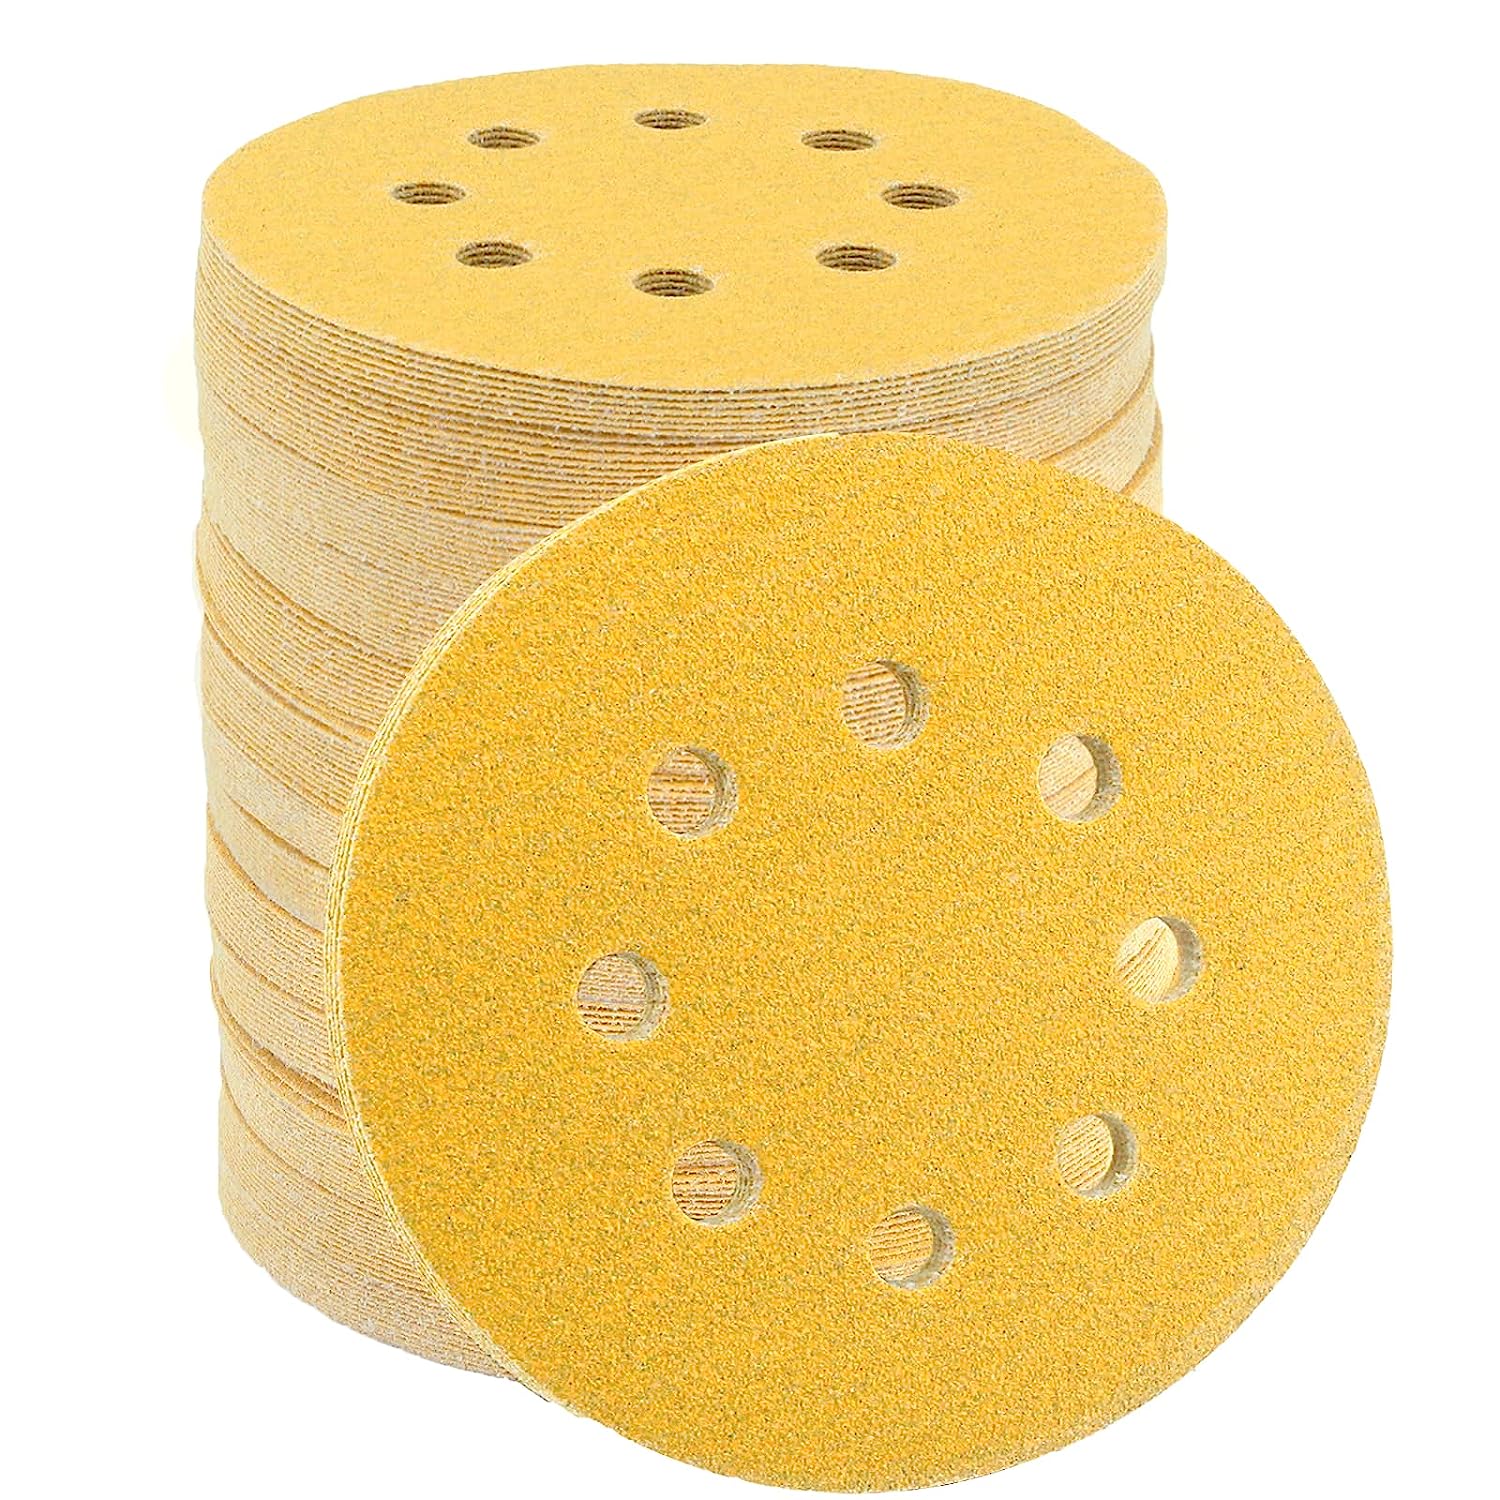 DRLIFE Gold Sanding Disc, 5 Inch 8 Hole Sandpaper Hook [...]